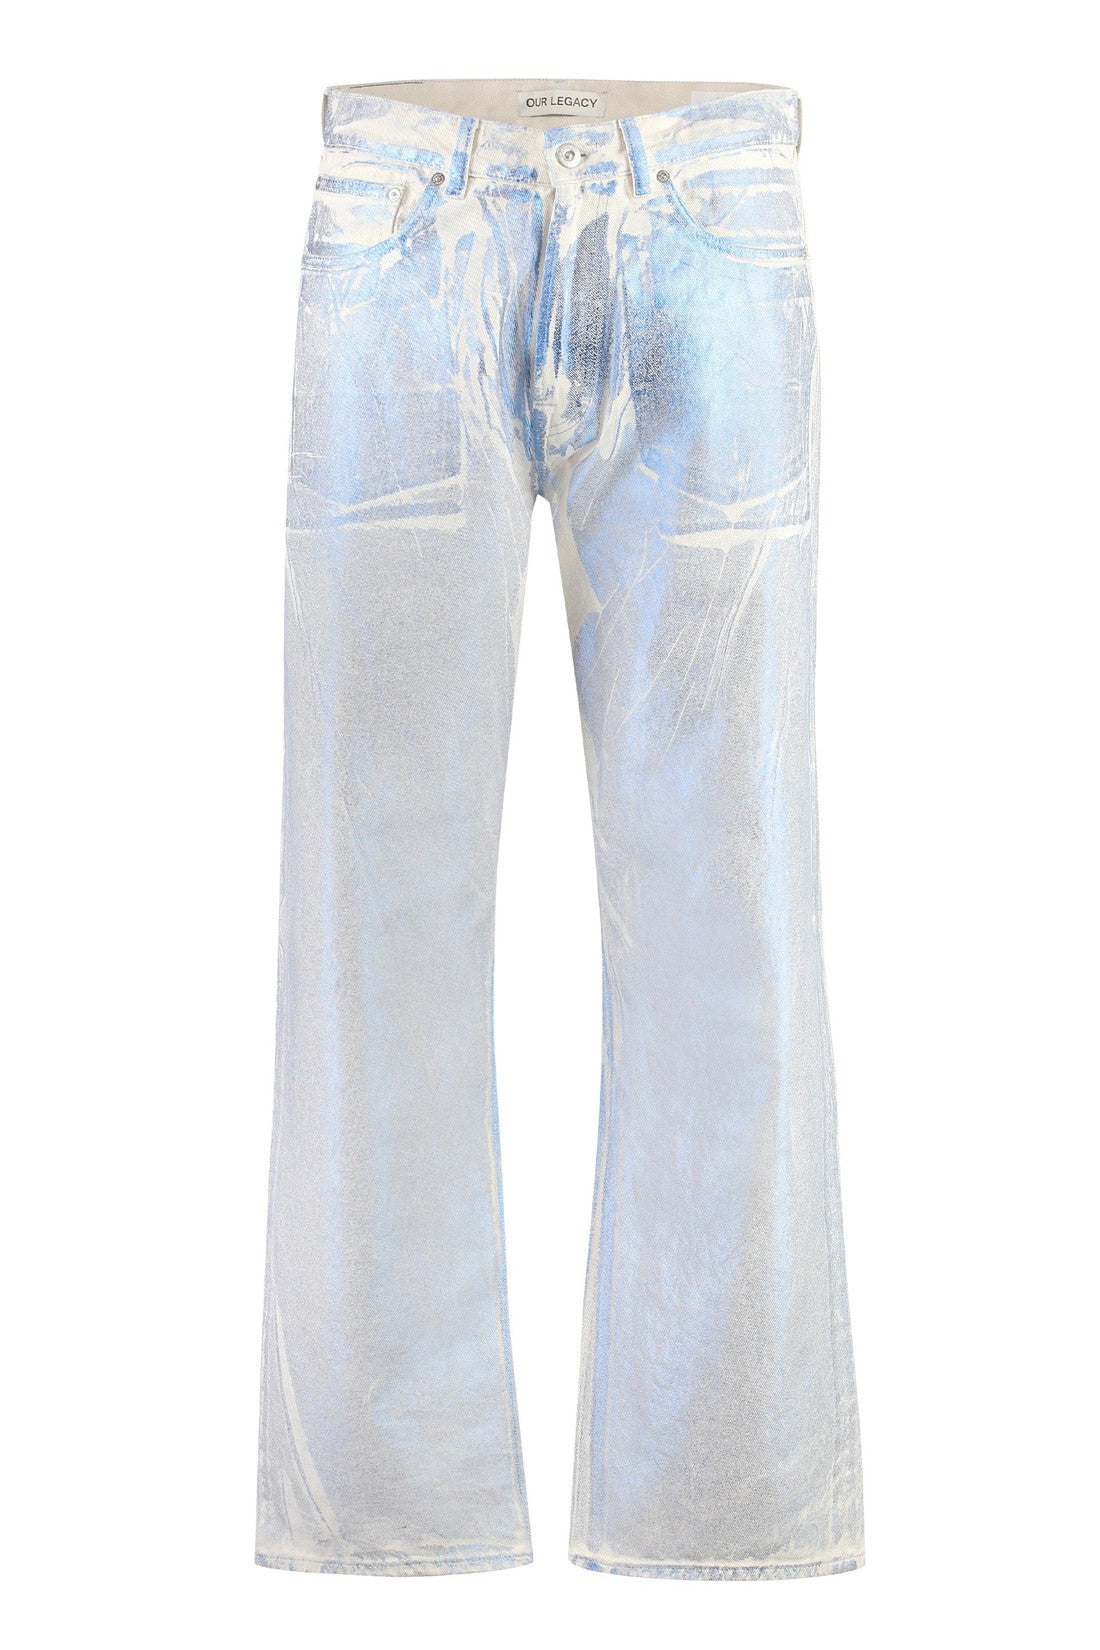 Our Legacy-OUTLET-SALE-Third Cut foil effect jeans-ARCHIVIST